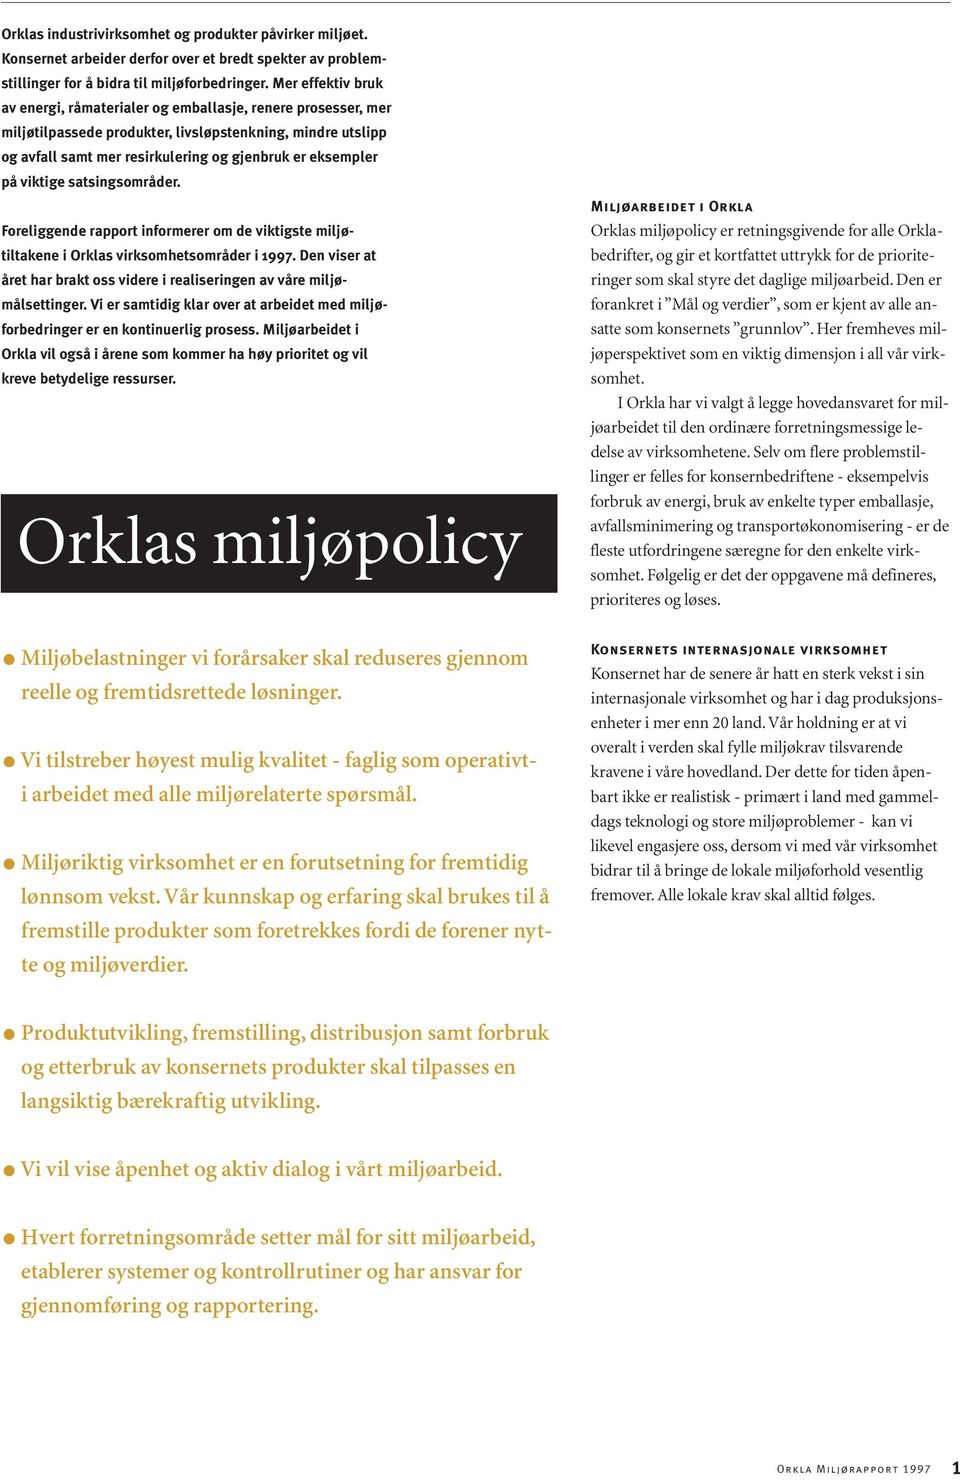 viktige satsingsområder. Foreliggende rapport informerer om de viktigste miljøtiltakene i Orklas virksomhetsområder i 1997.